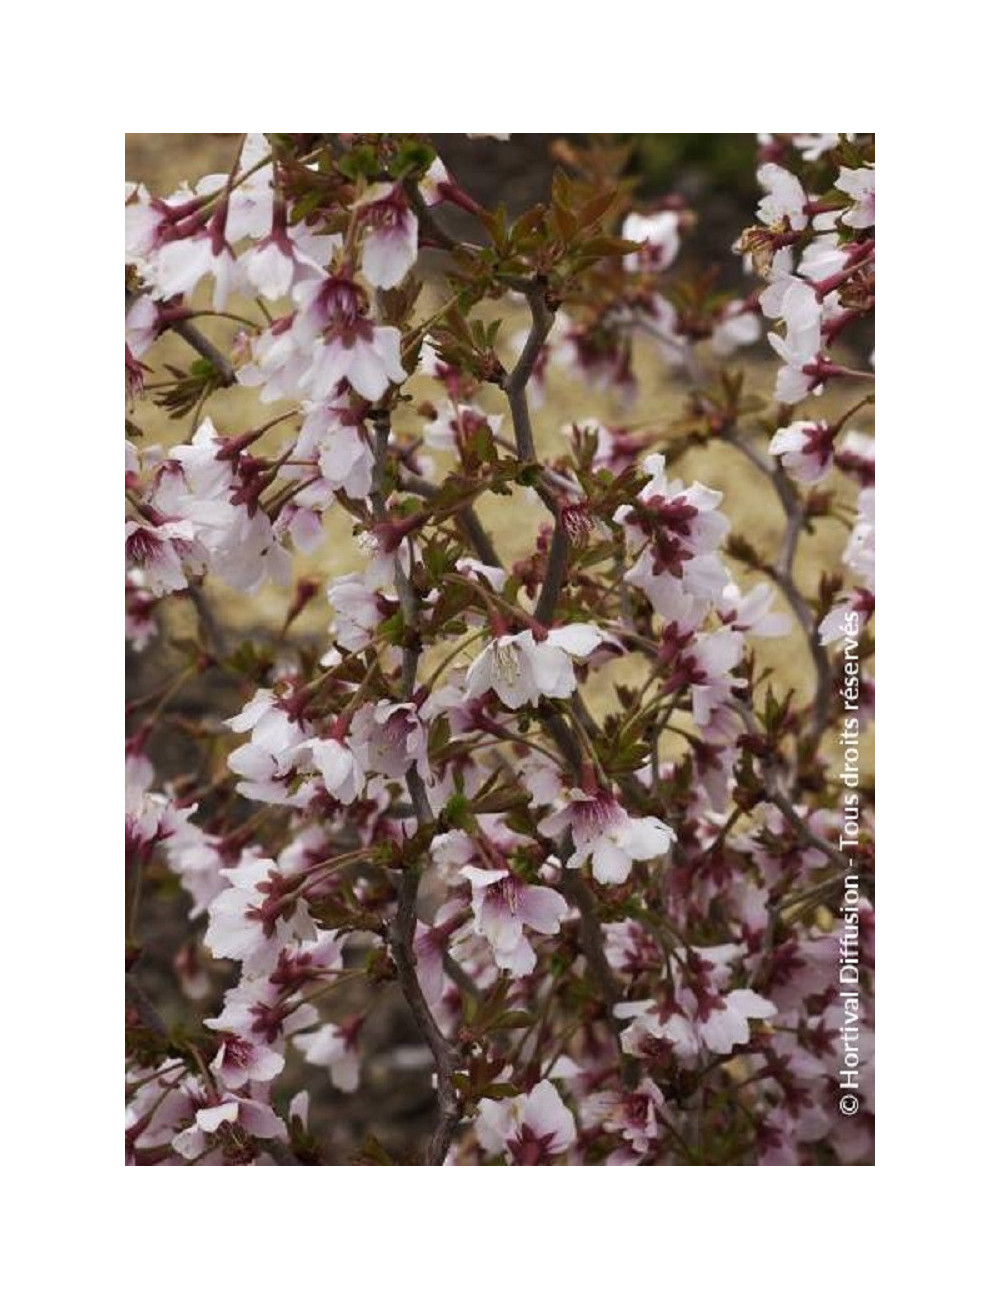 PRUNUS incisa KOJO NO MAI (Cerisier à fleurs du Japon Kojo No Mai)2